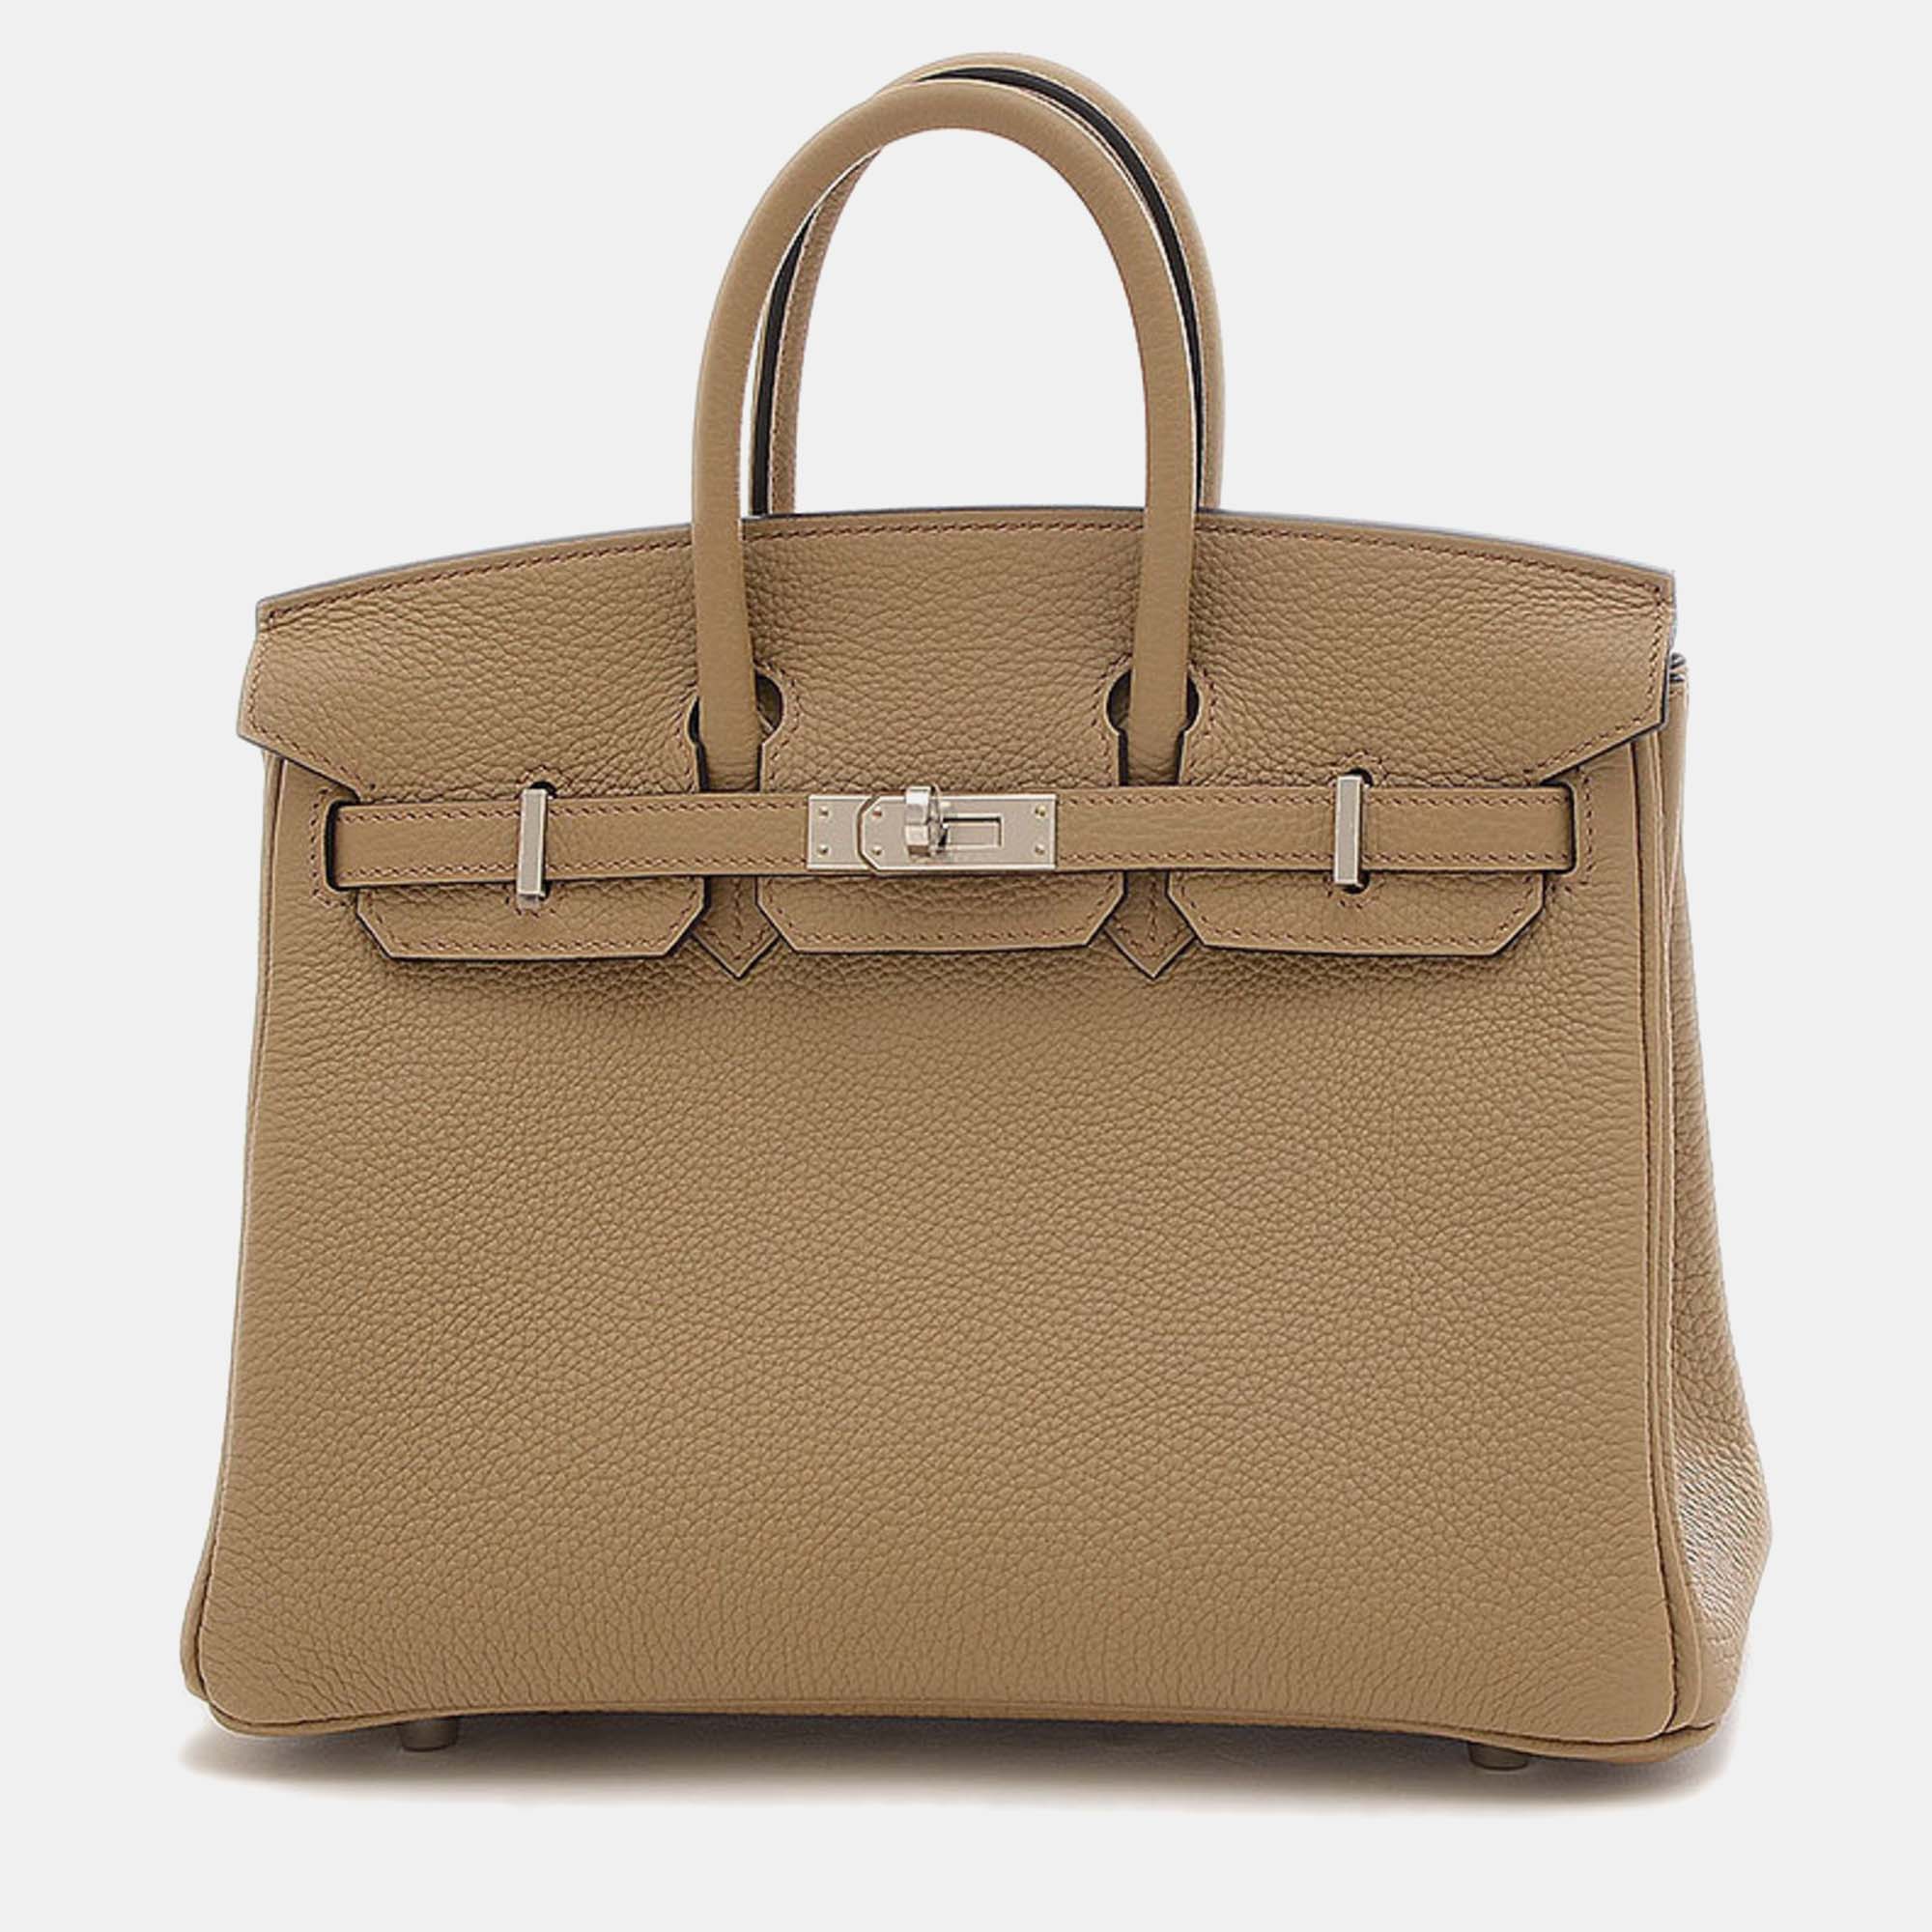 Hermes beige marfa togo birkin handbag